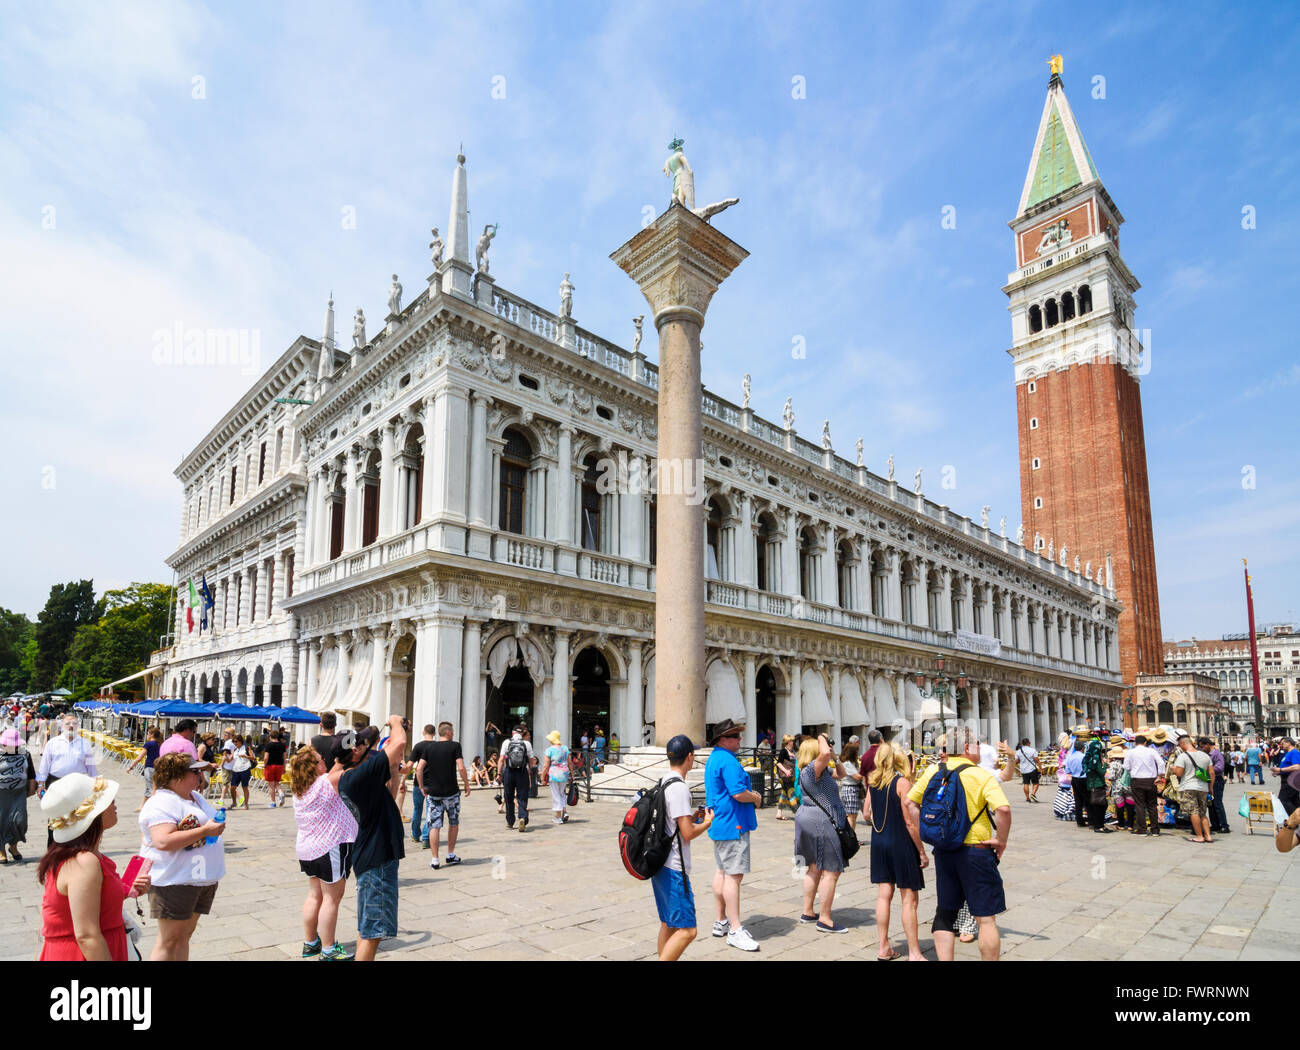 Touristen in der Piazzetta San Marco neben der Biblioteca und Campanile, Markusplatz Square, San Marco, Venedig, Italien Stockfoto